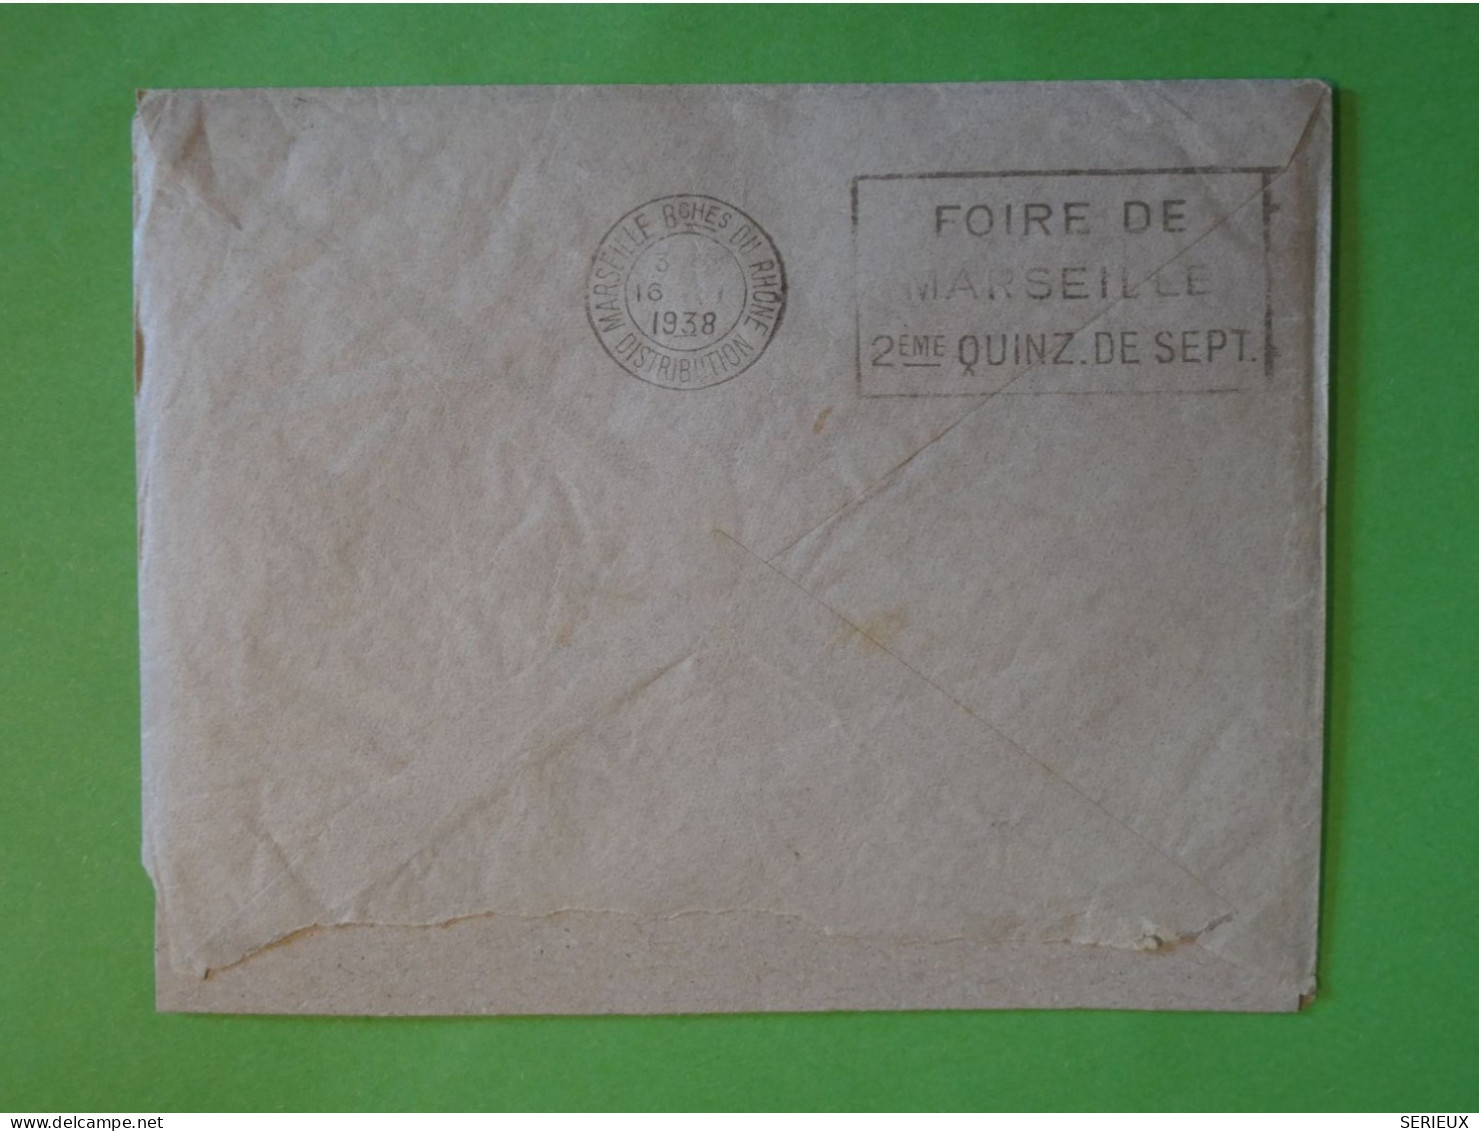 BU21 GUINEE  BELLE  LETTRE RR CIE FRAISSINET BATEAU VAPEUR 1938  A MARSEILLE  FRANCE++ AFF .INTERESSANT+ - Covers & Documents